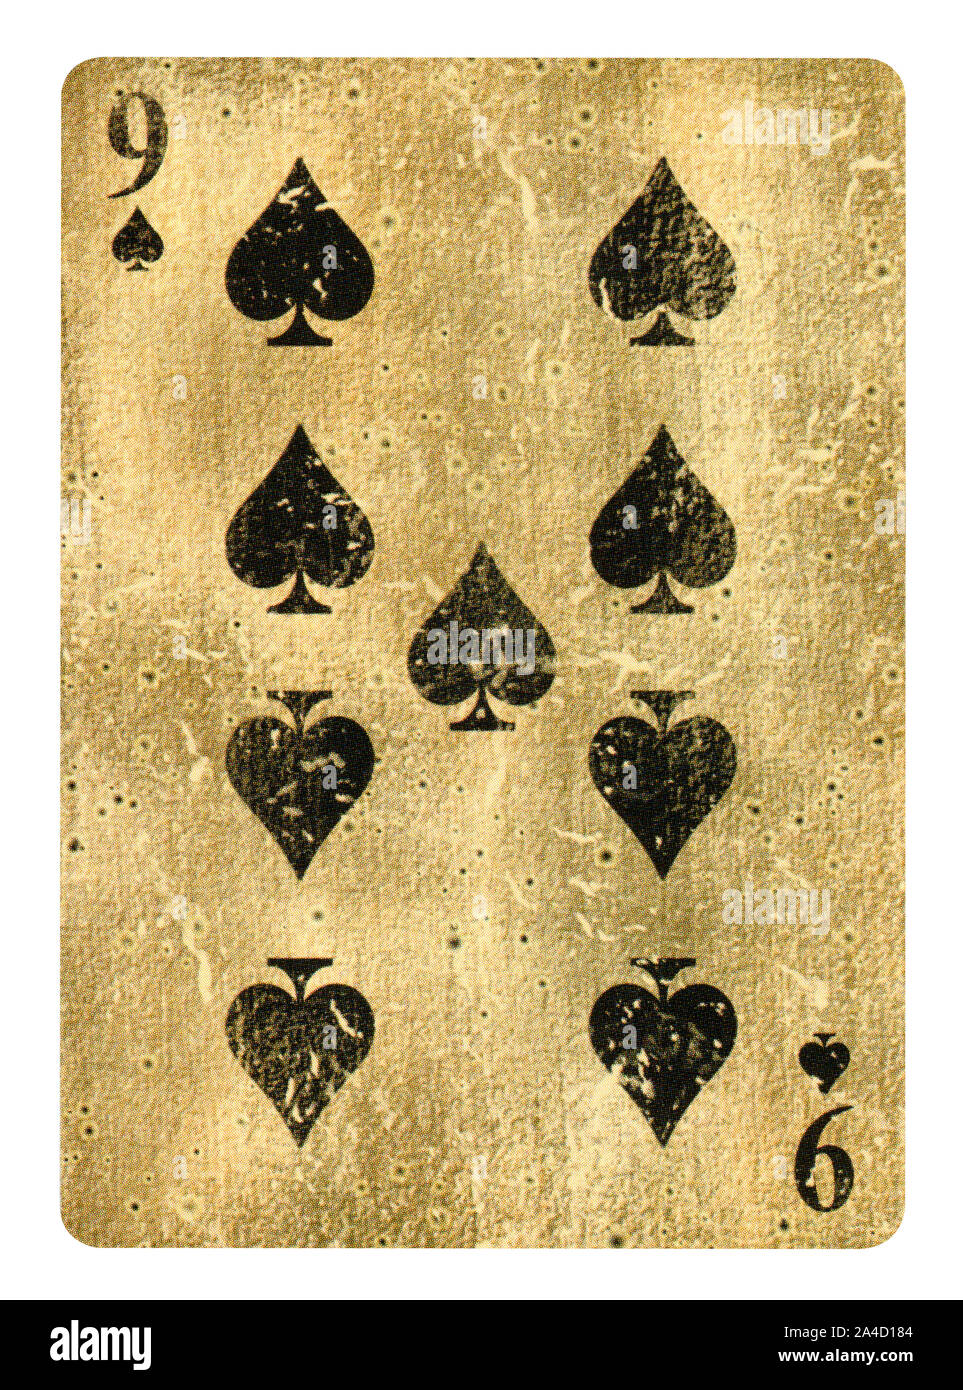 Neuf de pique jeu de carte - isolated on white Banque D'Images